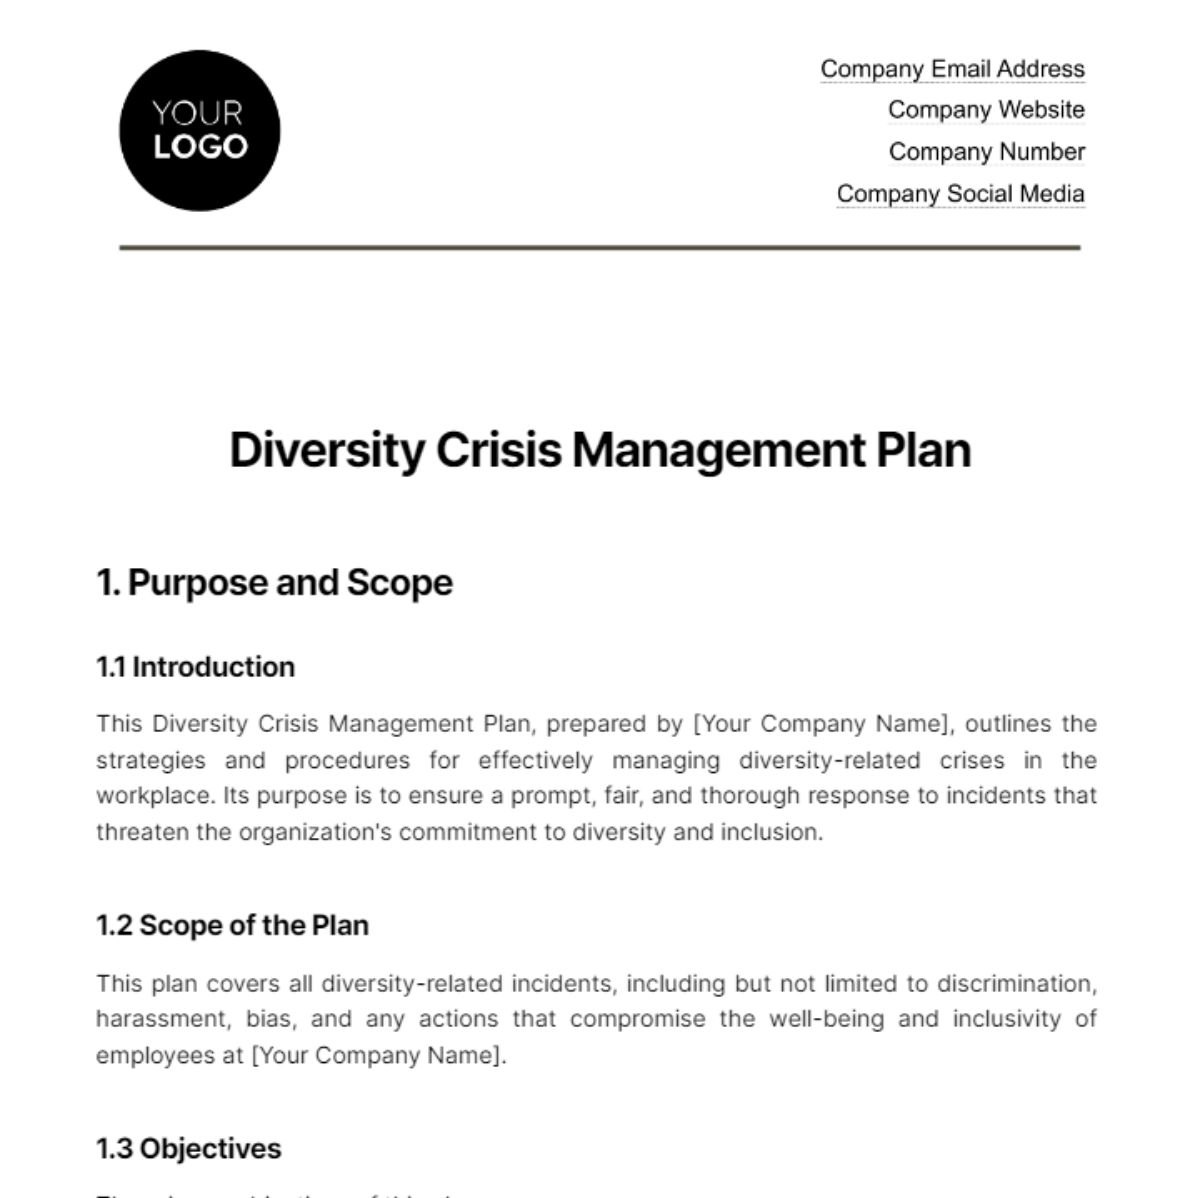 Diversity Crisis Management Plan HR Template